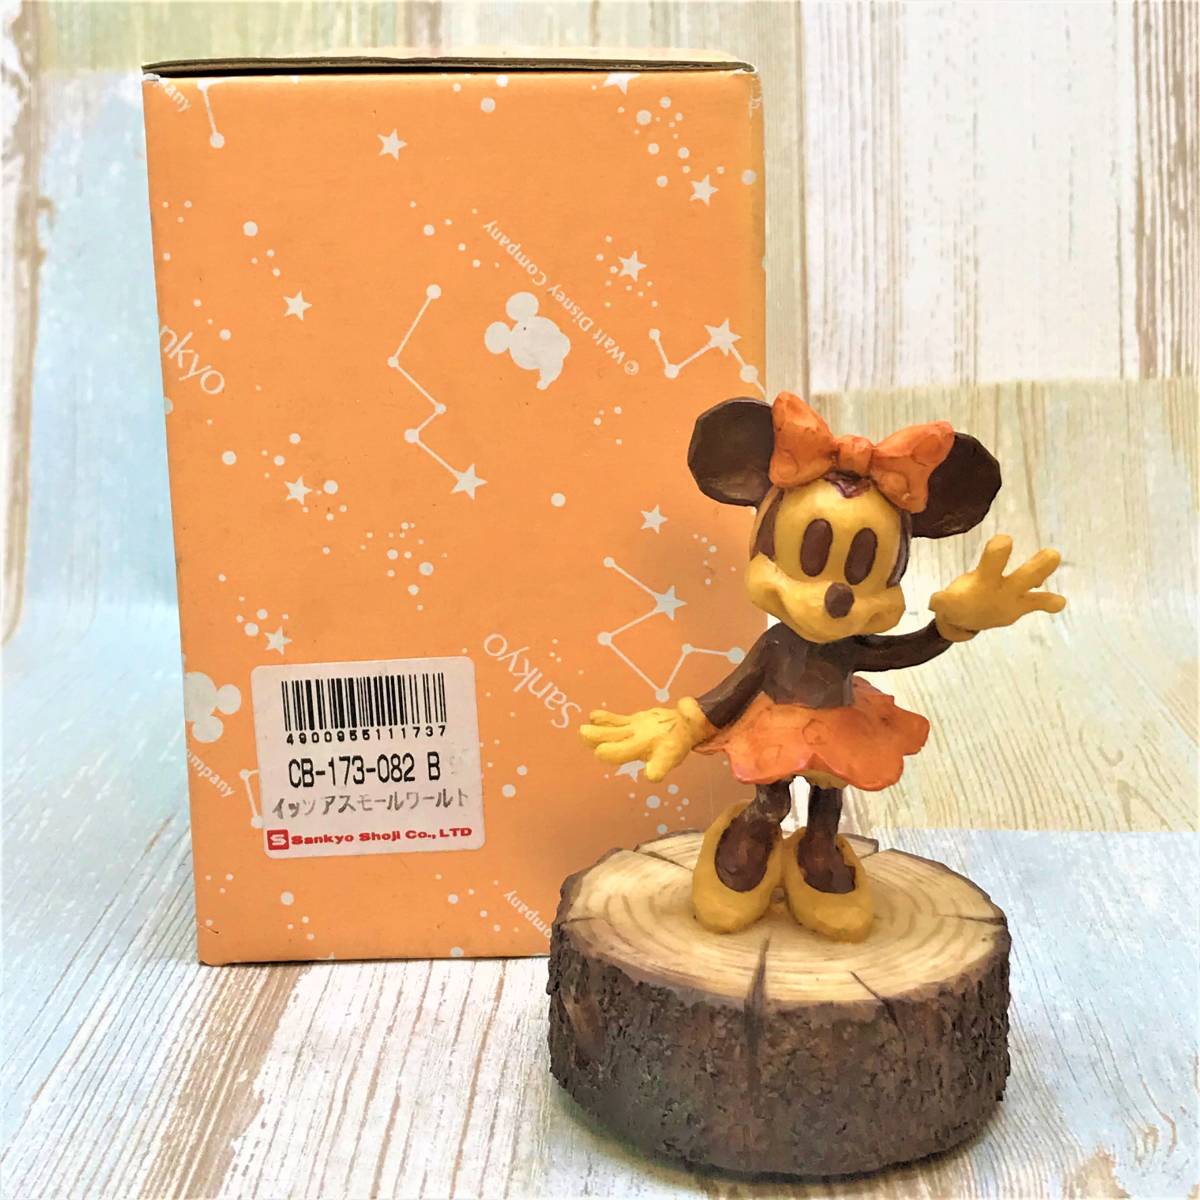 レア★ミニーマウス Minnie Mouse ミニー 陶器製 フィギュア 木製風 オルゴール フィギュア 小さな世界★ディズニー TDL Disney_画像1